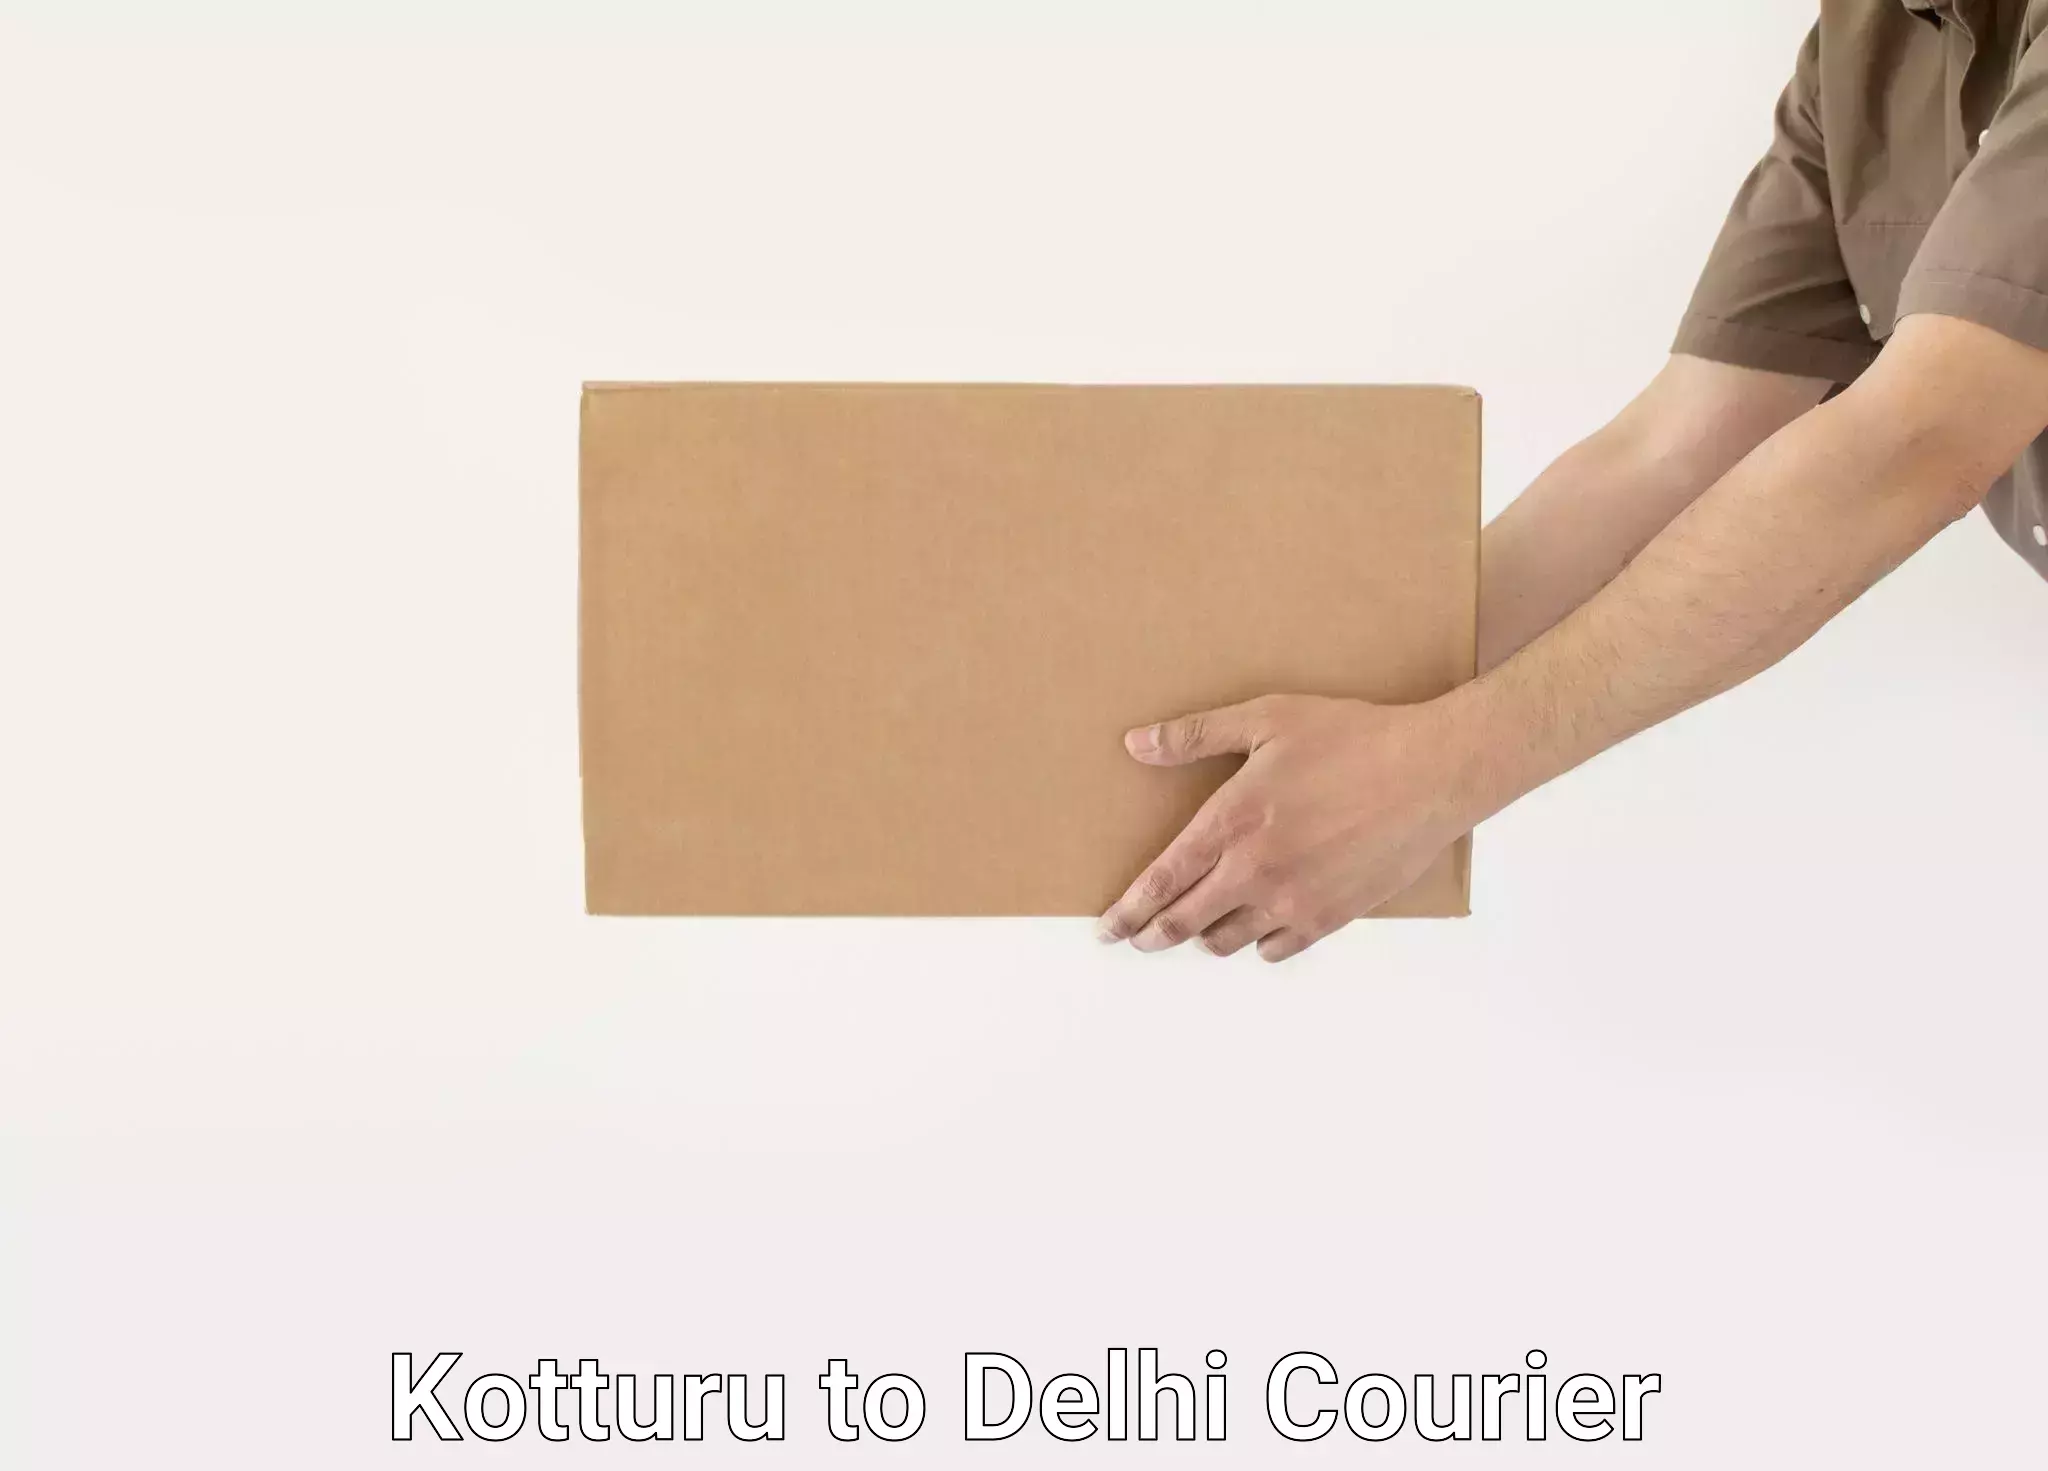 Home relocation experts Kotturu to Delhi